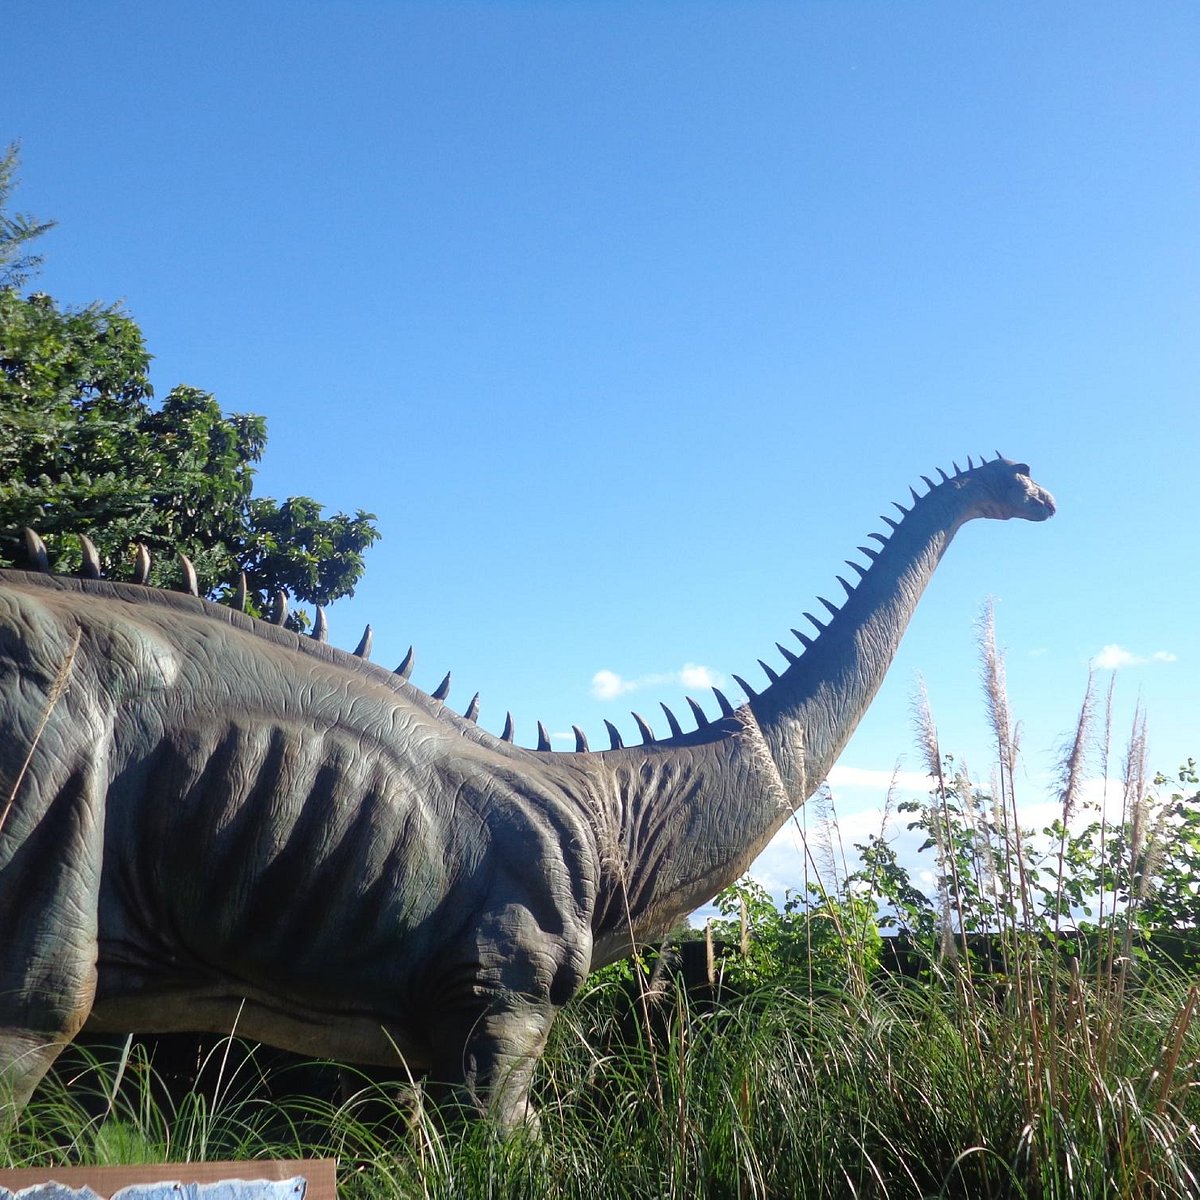 Encontrar um dinossauro super realista no estacionamento deve ser